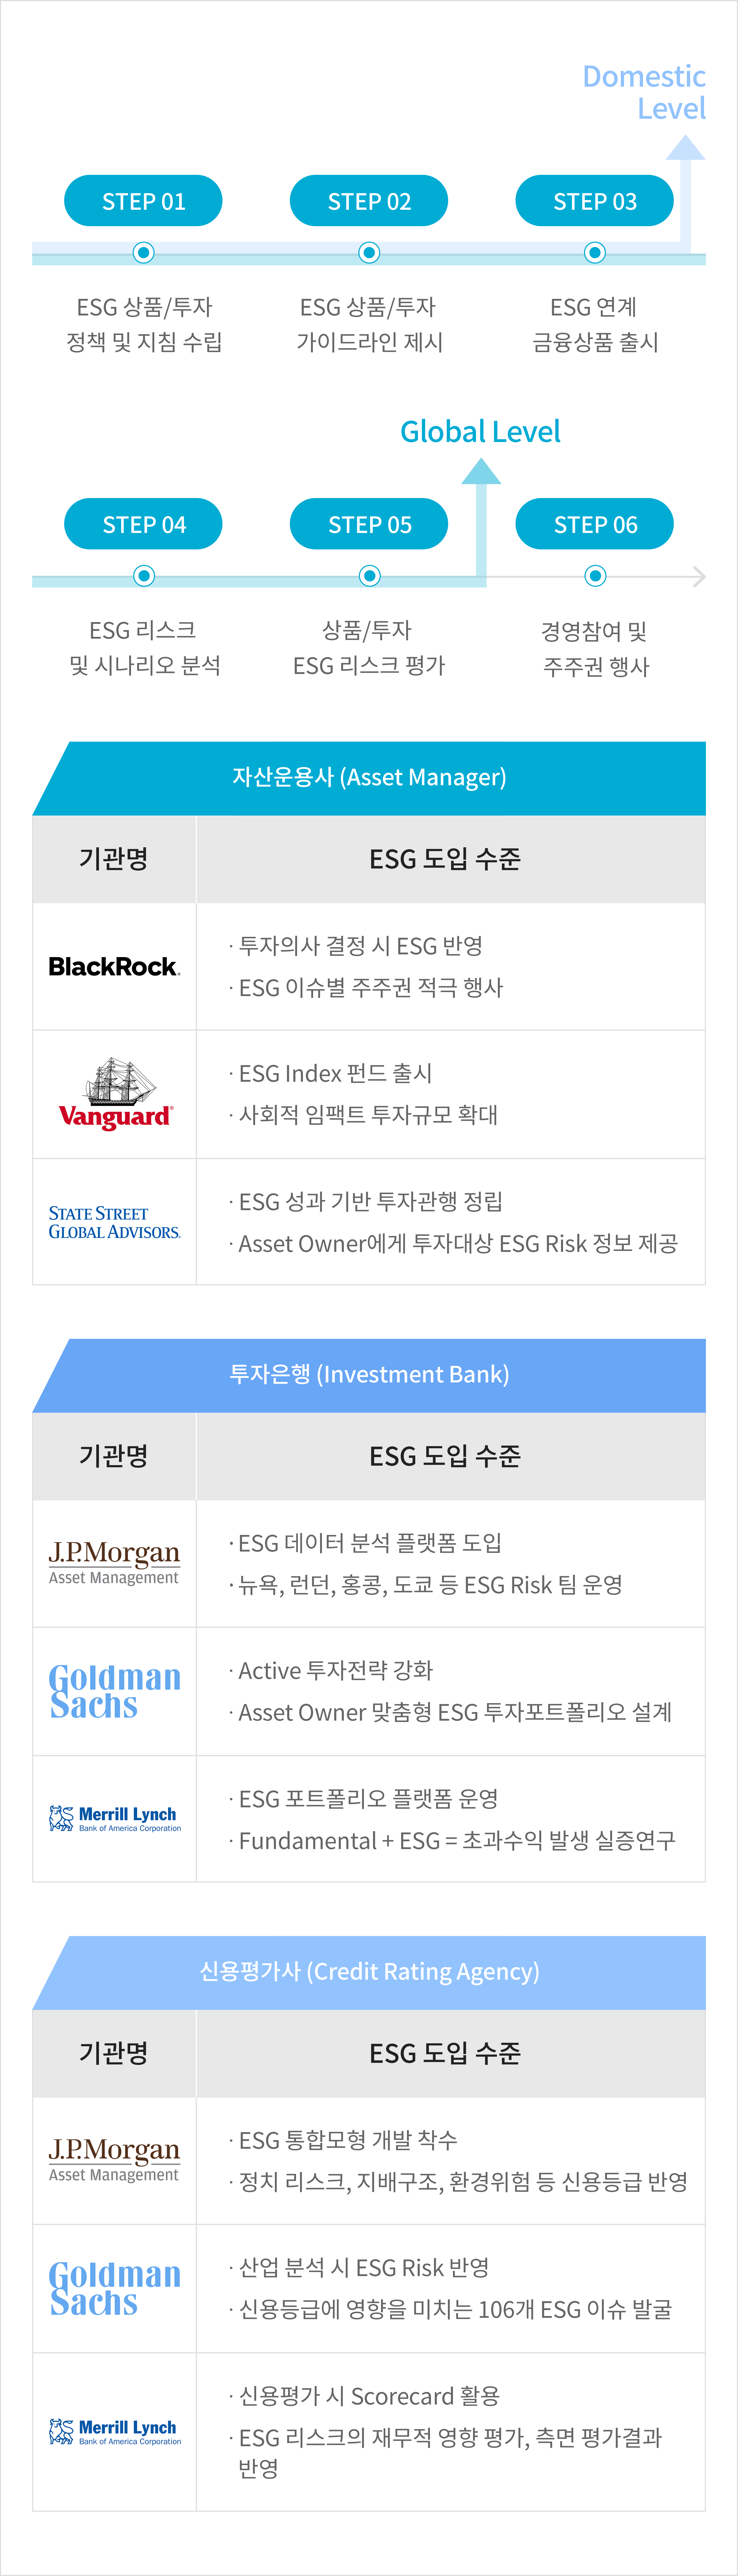 Step 01 ESG 상품/투자 정책 및 지침 수립, Step 02 ESG 상품/투자 가이드라인 제시, Step 03 ESG 연계 금융상품 출시, Domestic Level, Step 04 ESG 리스크 및 시나리오 분석, Step 05 상품/투자 ESG 리스크 평가, Global Leve, Step 06 경영참여 및 주주권 행사
							자산운용사 (Asset Manager)
							기관명 : BlackRock, ESG 도입 수준 : 투자의사 결정 시 ESG 반영, ESG 이슈별 주주권 적극 행사
							기관명 : Vanguard, ESG 도입 수준 : ∙ ESG Index 펀드 출시, 사회적 임팩트 투자규모 확대
							기관명 : STATE STREET GLOBAL ADVISORS, ESG 도입 수준 : ESG 성과 기반 투자관행 정립, Asset Owner에게 투자대상, ESG Risk 정보 제공
							투자은행 (Investment Bank)
							기관명 : J.P.MORGAN ASSET Management, ESG 도입 수준 : ESG 데이터 분석 플랫동 도입, 뉴욕, 런던, 홍콩, 도쿄 등 ESG Risk 팀 운영
							기관명 : GLODMAN SACHS, ESG 도입 수준 : Active 투자전략 강화, Asset Owner 맞춤형, ESG 투자포트폴리오 설계
							기관명 : Merrill Lynch, ESG 도입 수준 : ESG 포트폴리오 플랫폼 운영, Fundamental + ESG = 초과수익 발생 실증연구
							신용평가사 (Credit Rating Agency)
							기관명 : Fitch Ratings, ESG 도입 수준 : ESG 통합모형 개발 착수, 정치 리스크, 지배구조, 환경위험 등 신용등급 반영
							기관명 : STANDARD&POOR'S, ESG 도입 수준 : 산업 분석 시 ESG Risk 반영, 신용등급에 영향을 미치는 106개 ESG 이슈 발굴
							기관명 : MOODY'S, ESG 도입 수준 : 신용평가 시 Scorecard 활용, ESG 리스크의 재무적 영향, 평가, 측면 평가결과 반영